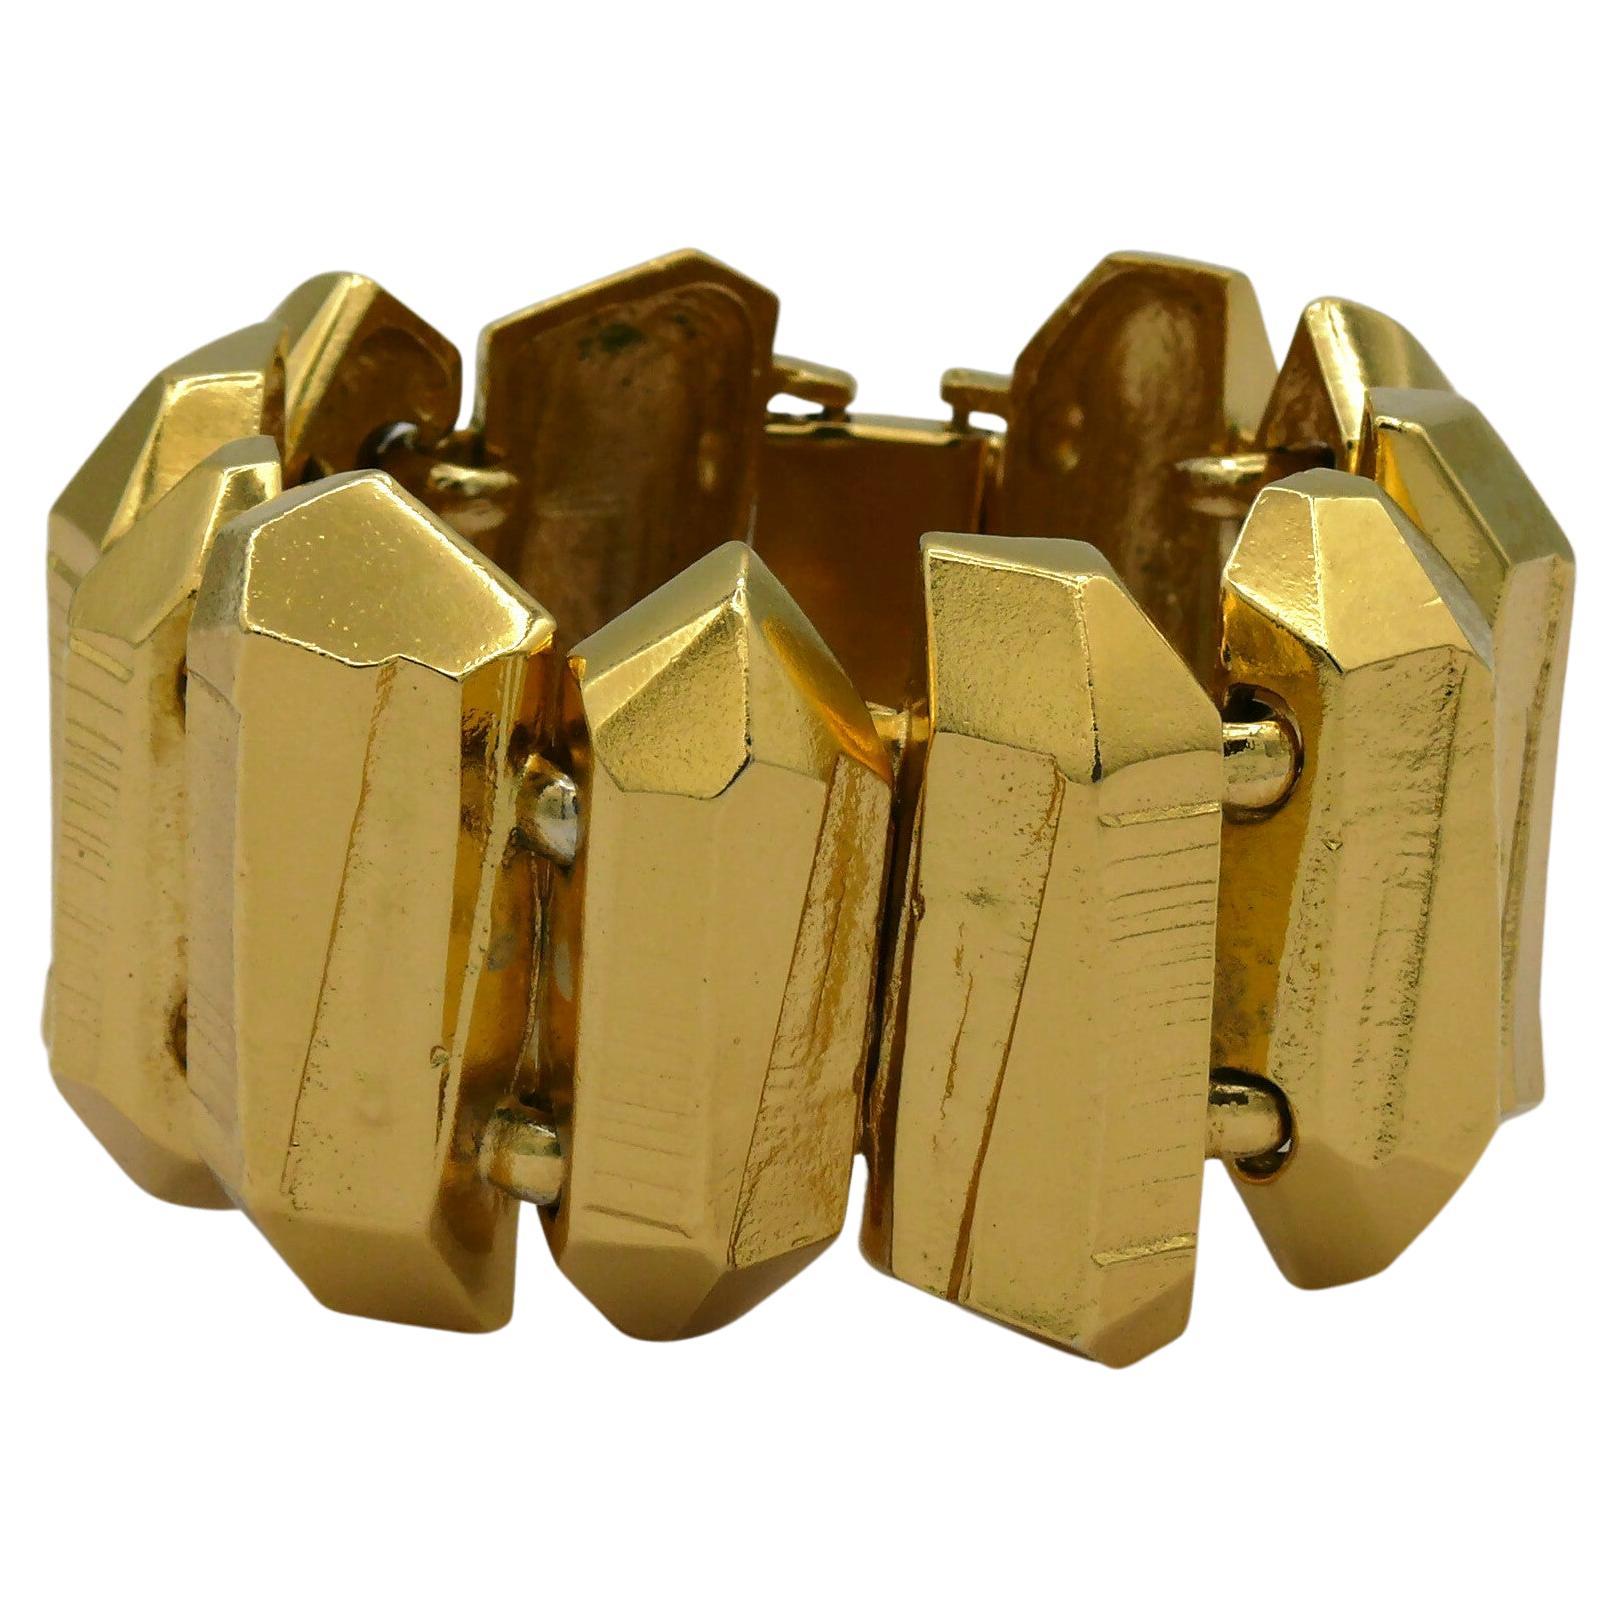 YVES SAINT LAURENT YSL Vintage Gold Tone Rock Crystal Prism Design Cuff Bracelet For Sale